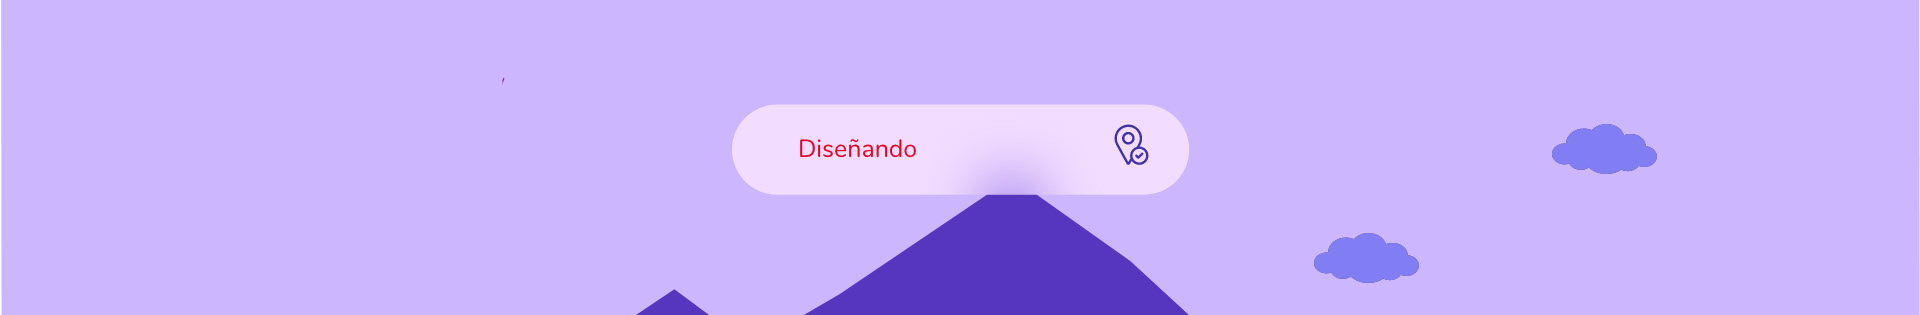 Josefina Mercado's profile banner